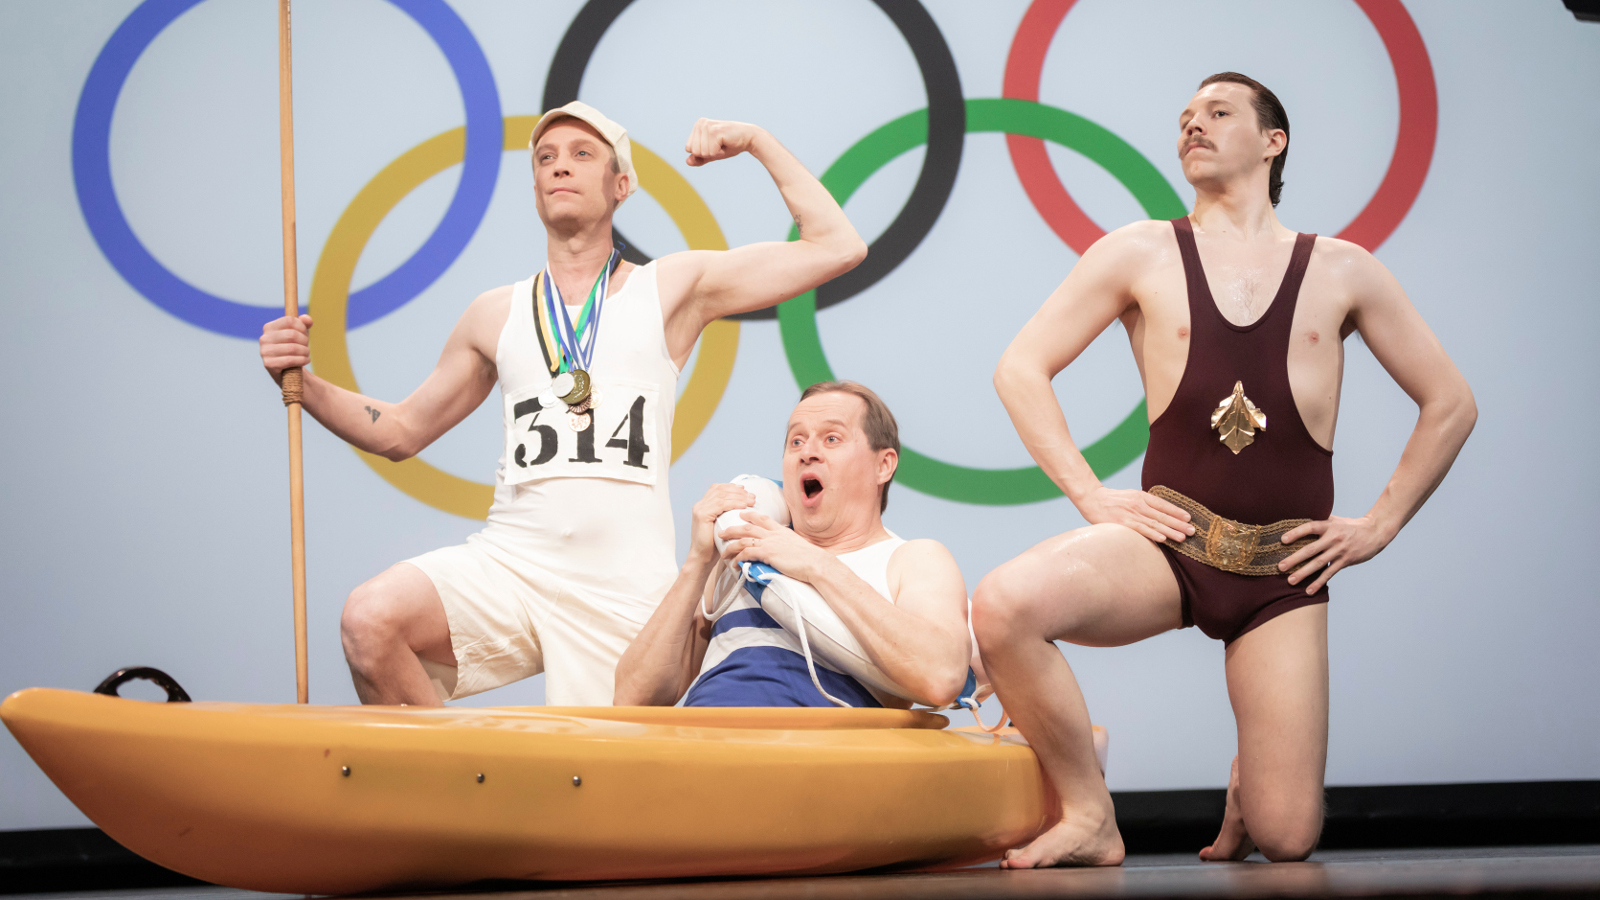 Kuvan tausta on valkoinen ja siinä on isot olympiarenkaat. Edessä on kolme miestä vanhanaikaisissa voimisteluvaatteissa ja he pullistelevat lihaksiaan.